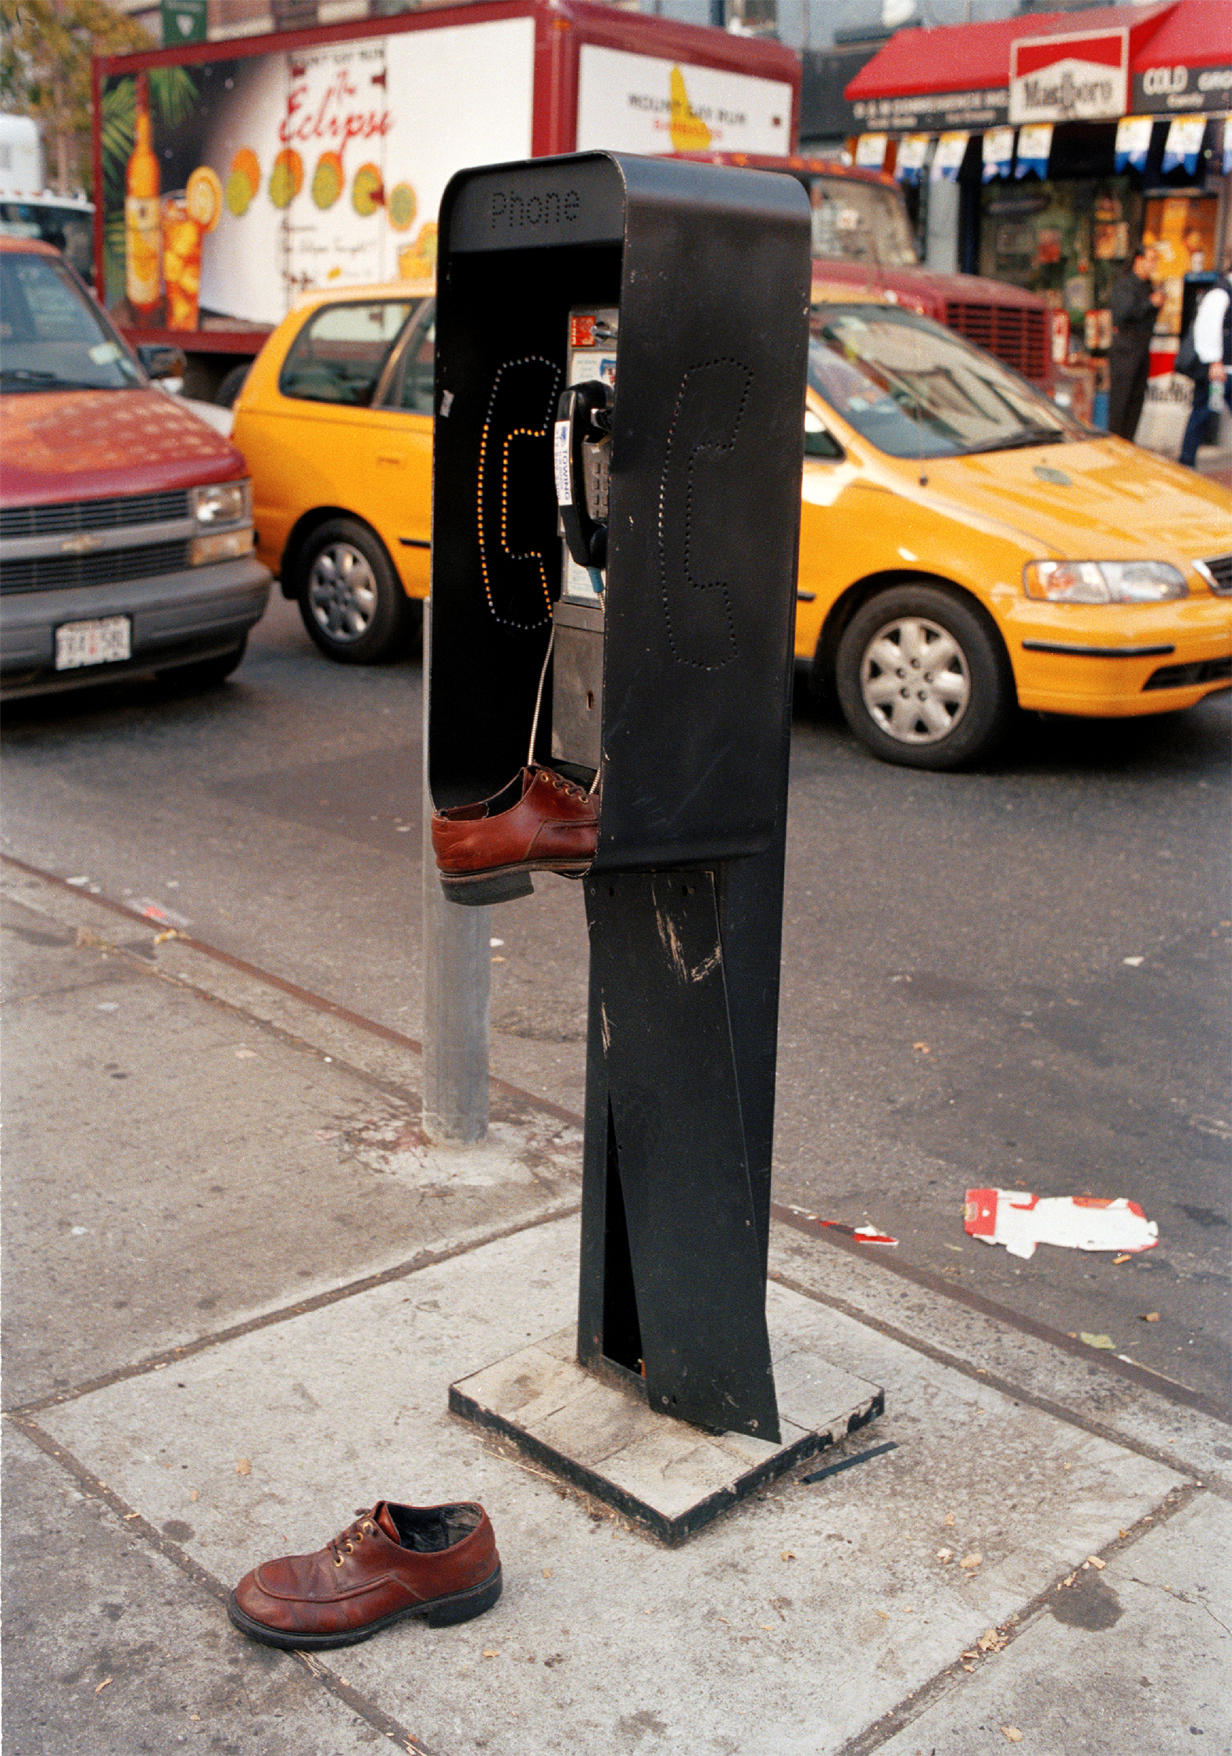 Straßenszene mit vergessenen Schuhen an einem öffentlichen Telefon. (c) Melanie Einzig 